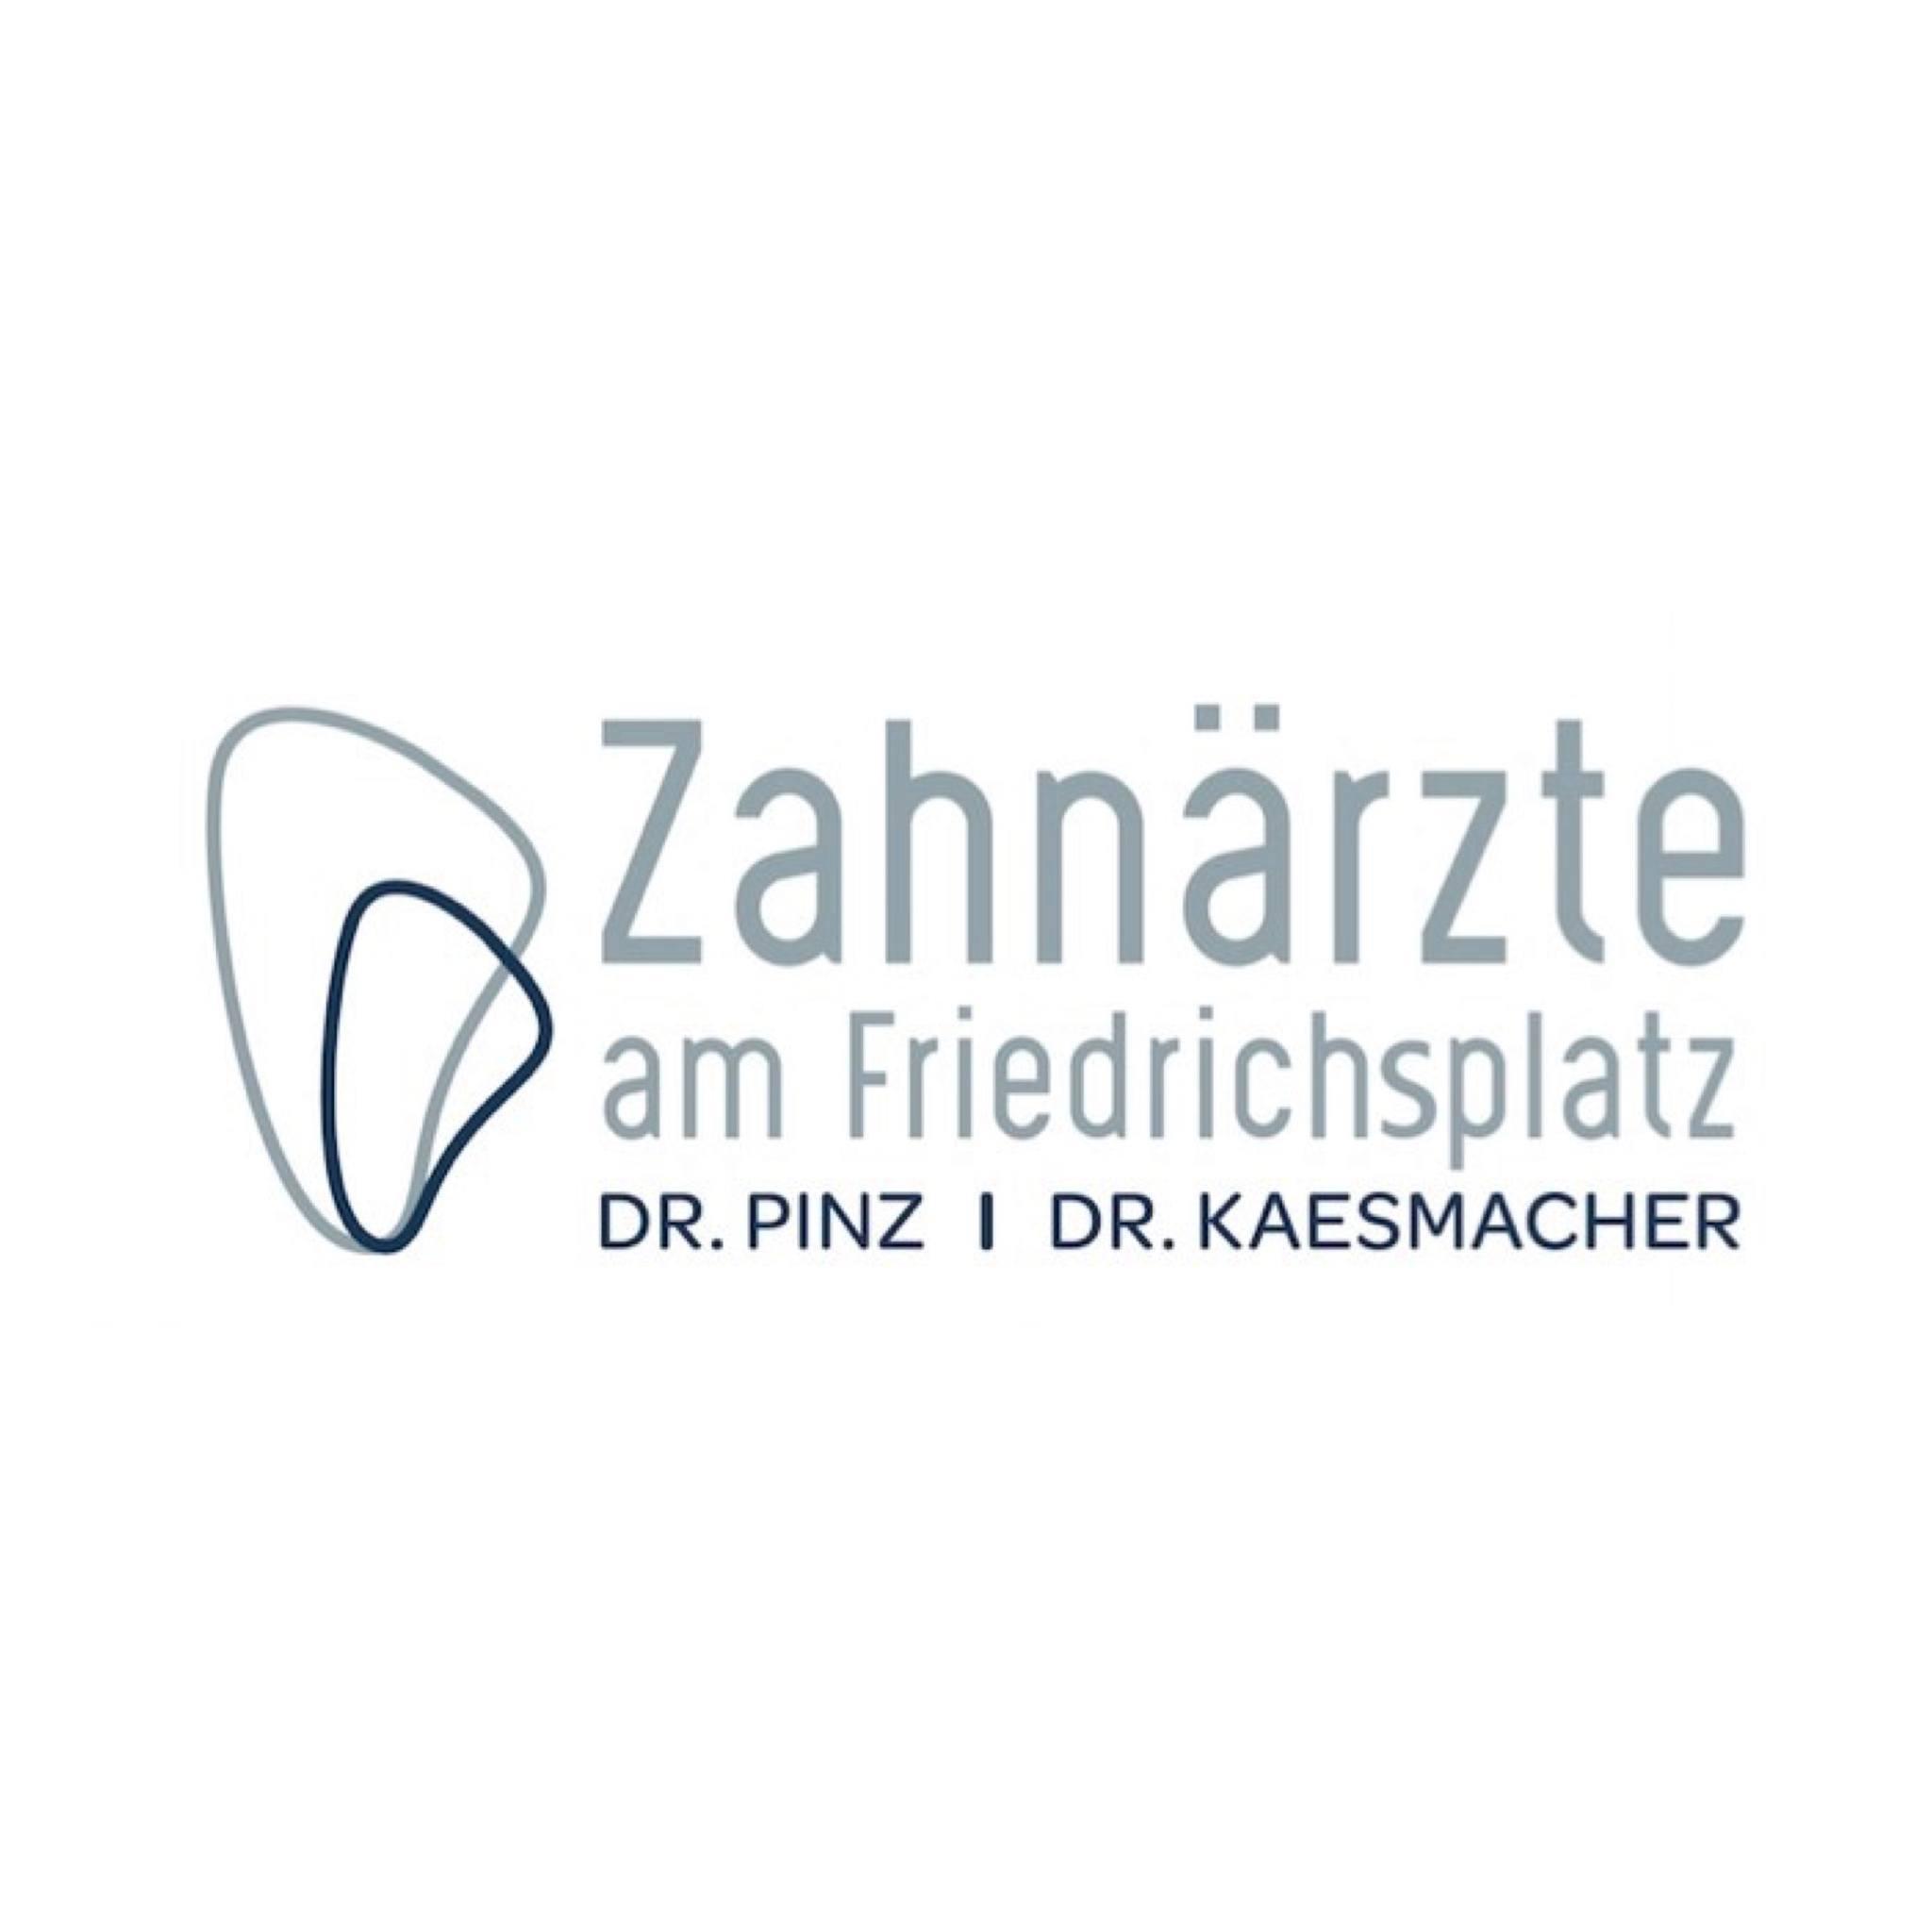 Zahnärzte am Friedrichsplatz Logo